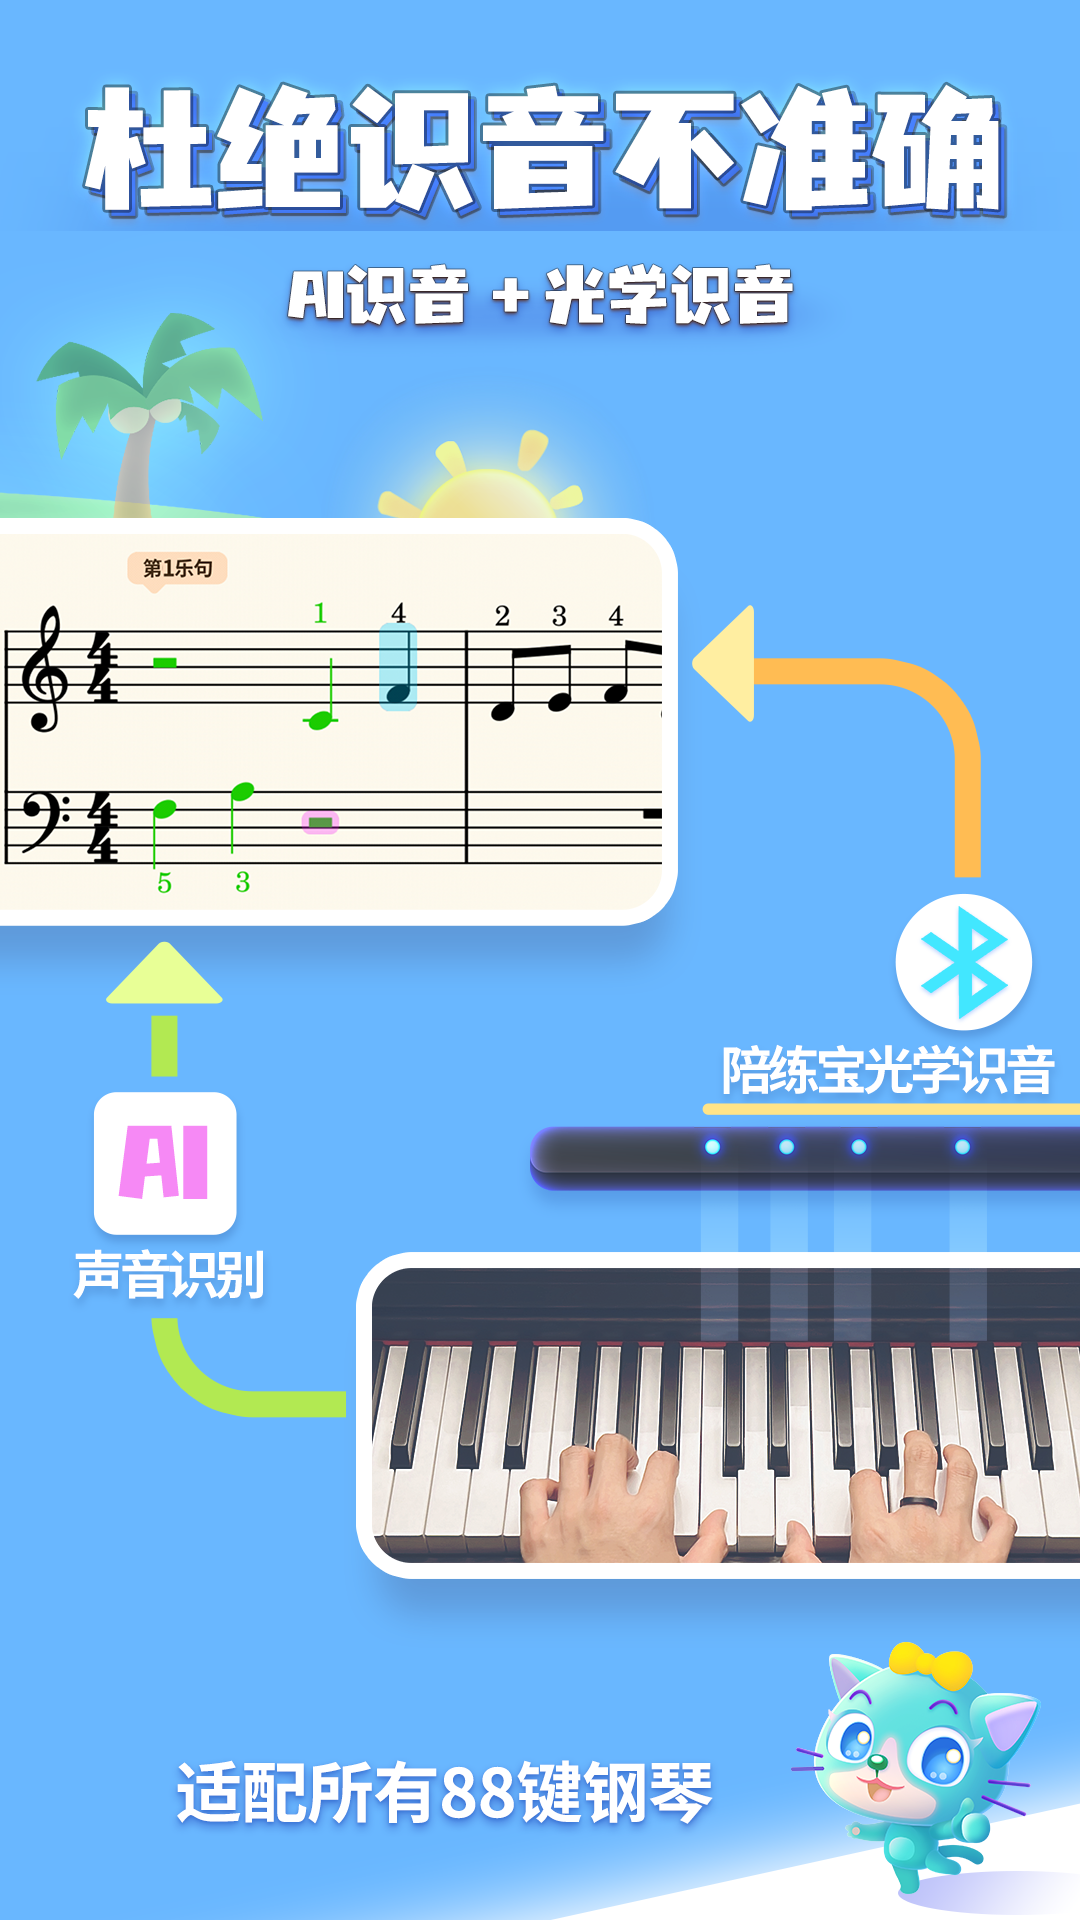 弹琴吧钢琴陪练appv2.7 最新版(钢琴网上陪练)_弹琴吧钢琴陪练下载